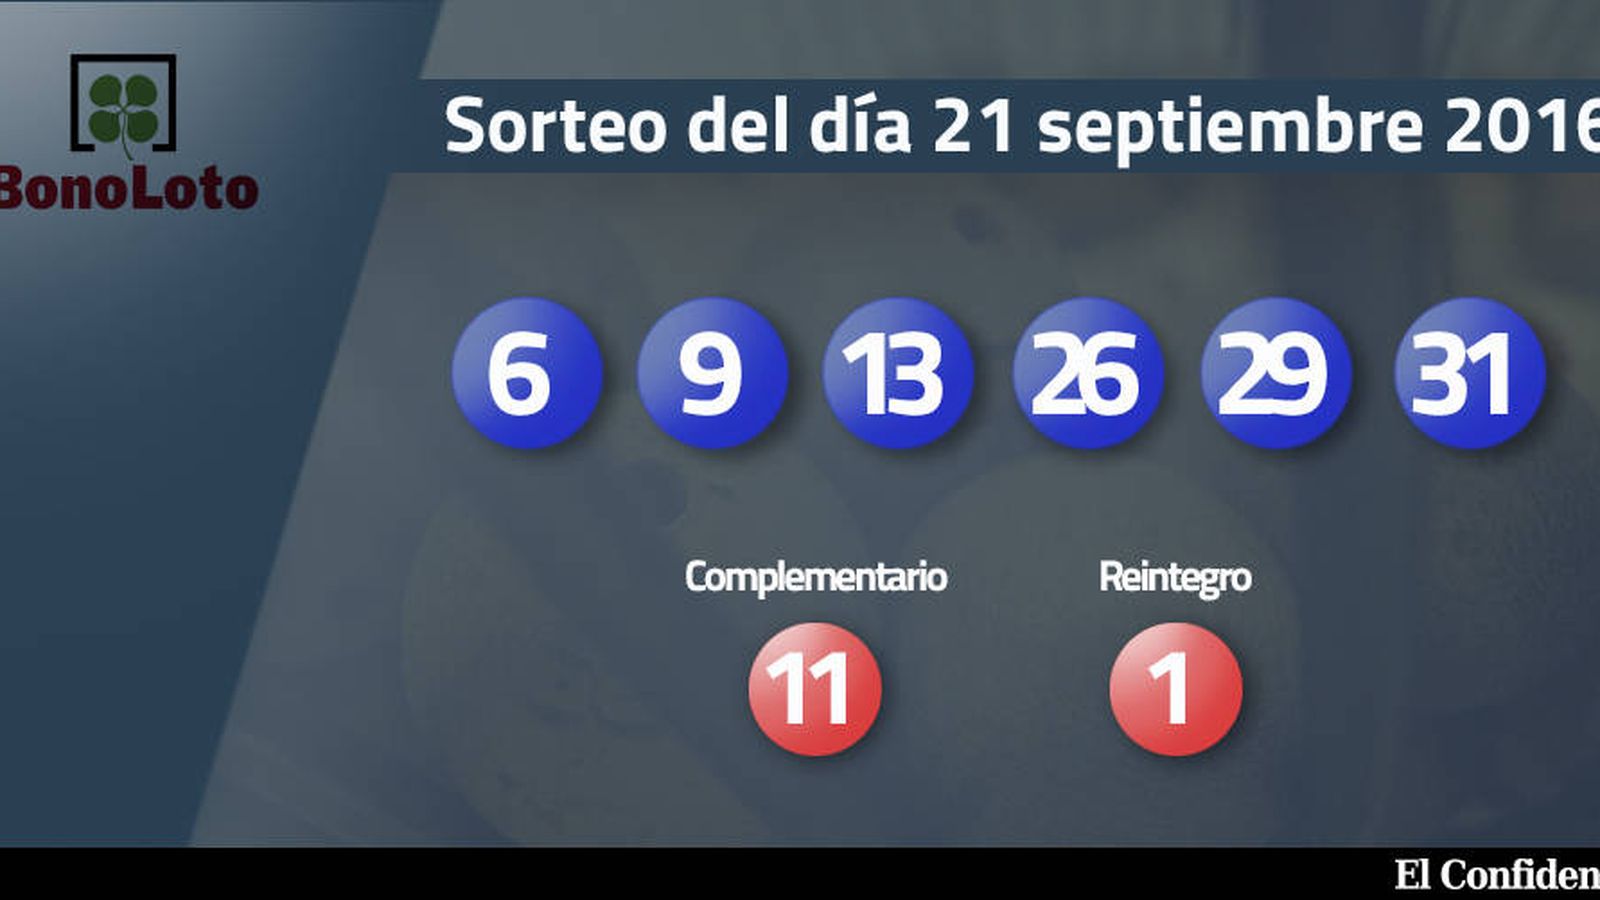 Foto: Resultados del sorteo de la Bonoloto del 21 septiembre 2016 (EC)